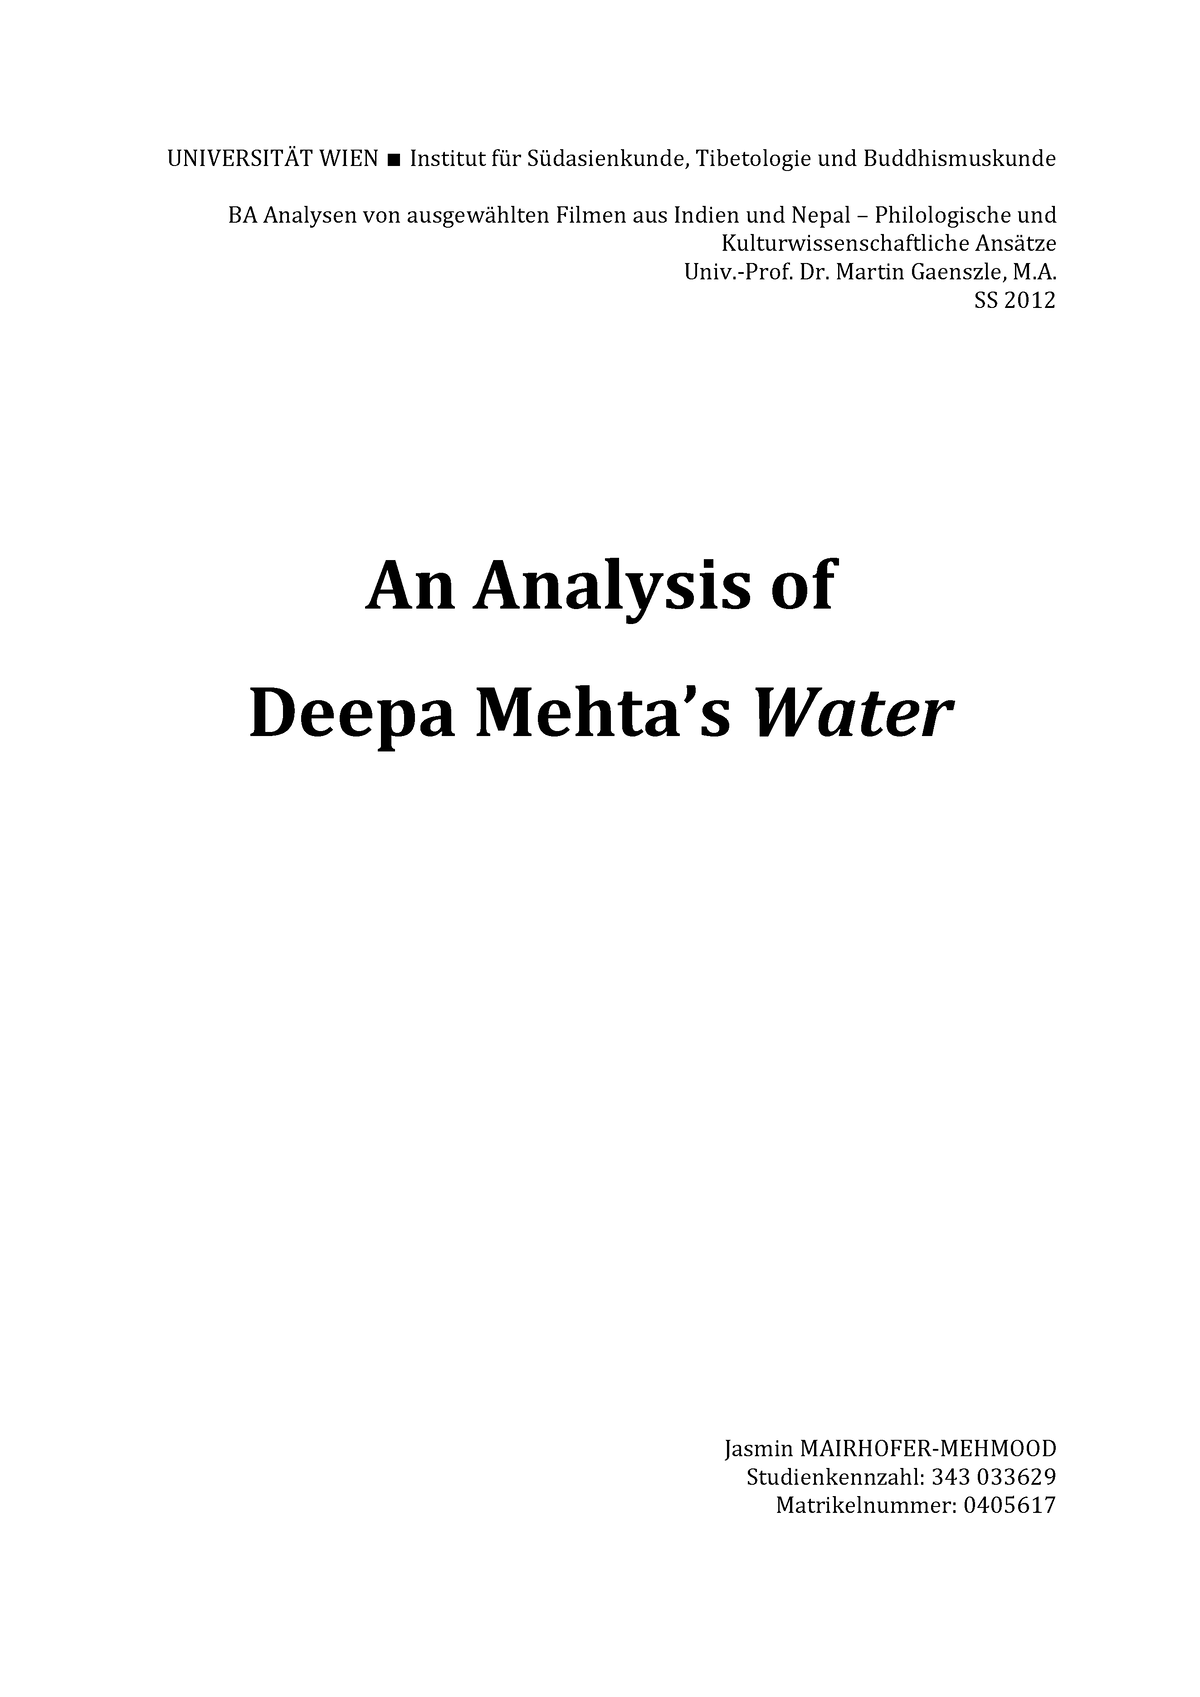 An Analysis of Deepa Mehtas Water - UN)VERS)TÄT W)EN ∎ Institut für ...